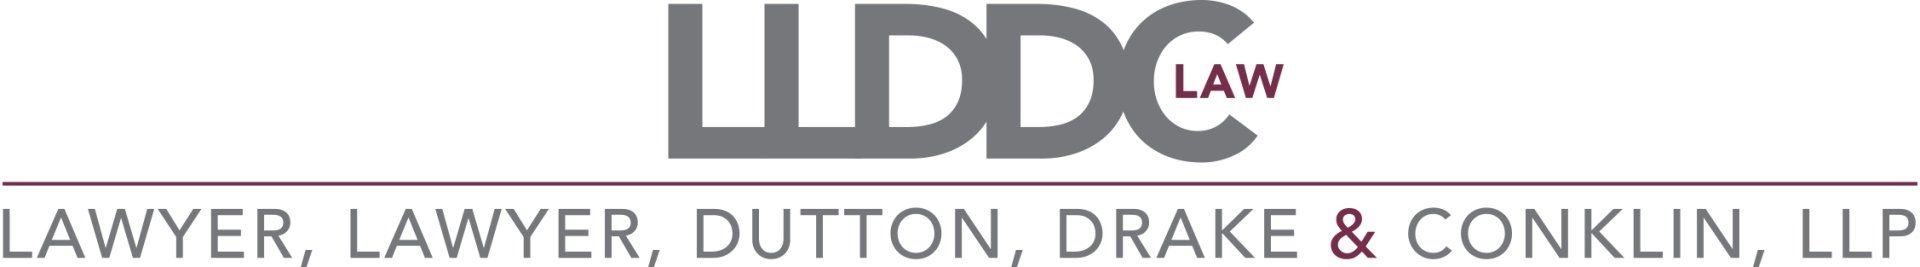 Lawyer, Lawyer, Dutton, Drake & Conklin, L.L.P. logo